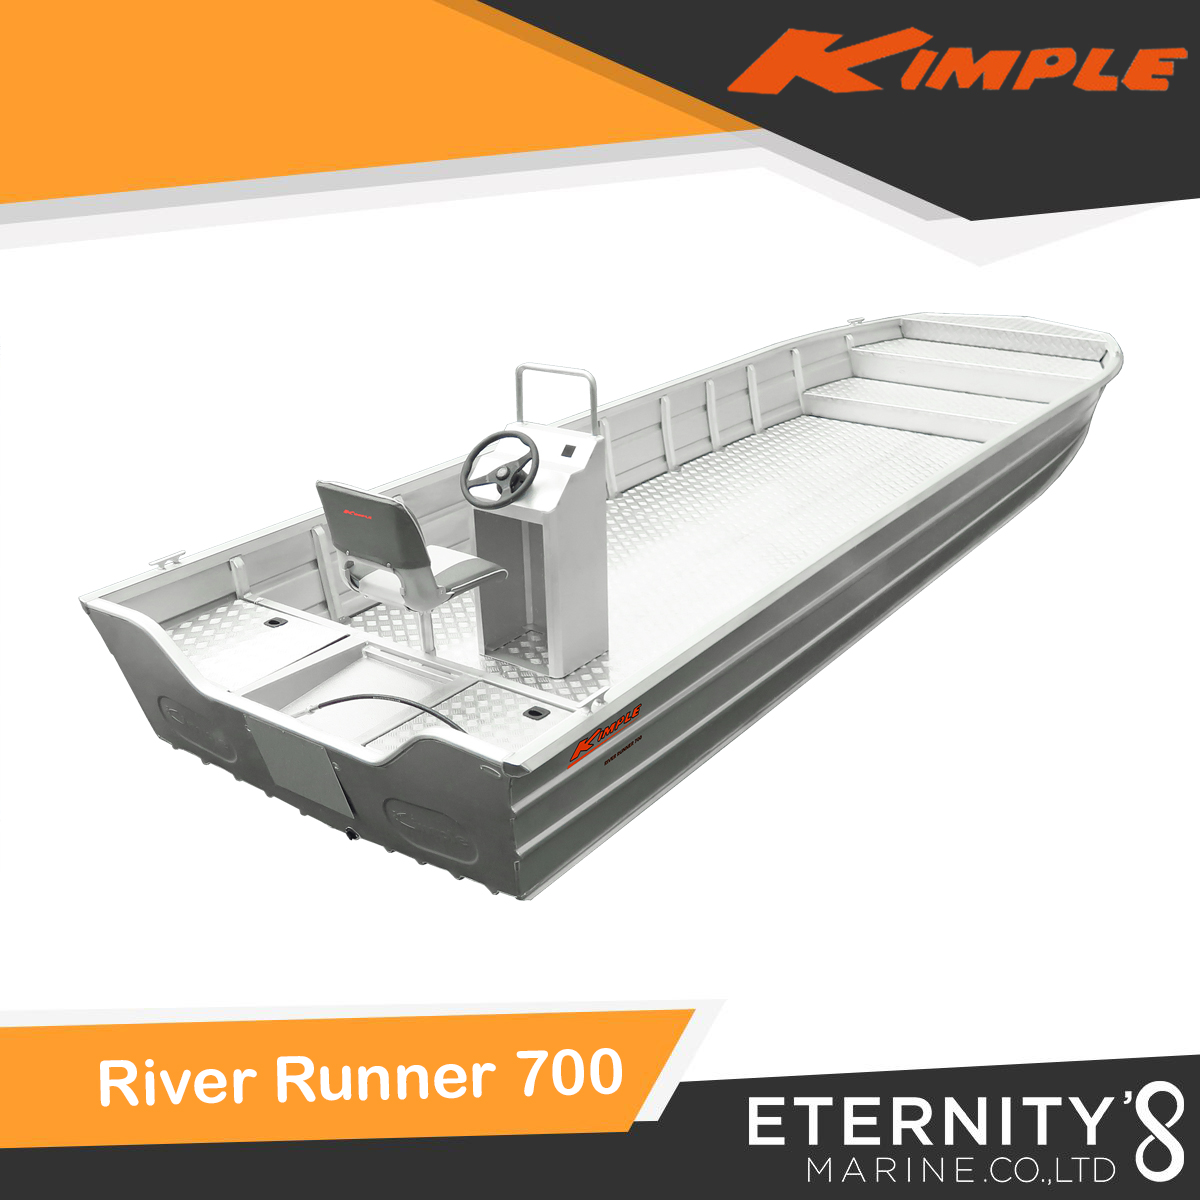 Kimple River Runner 700